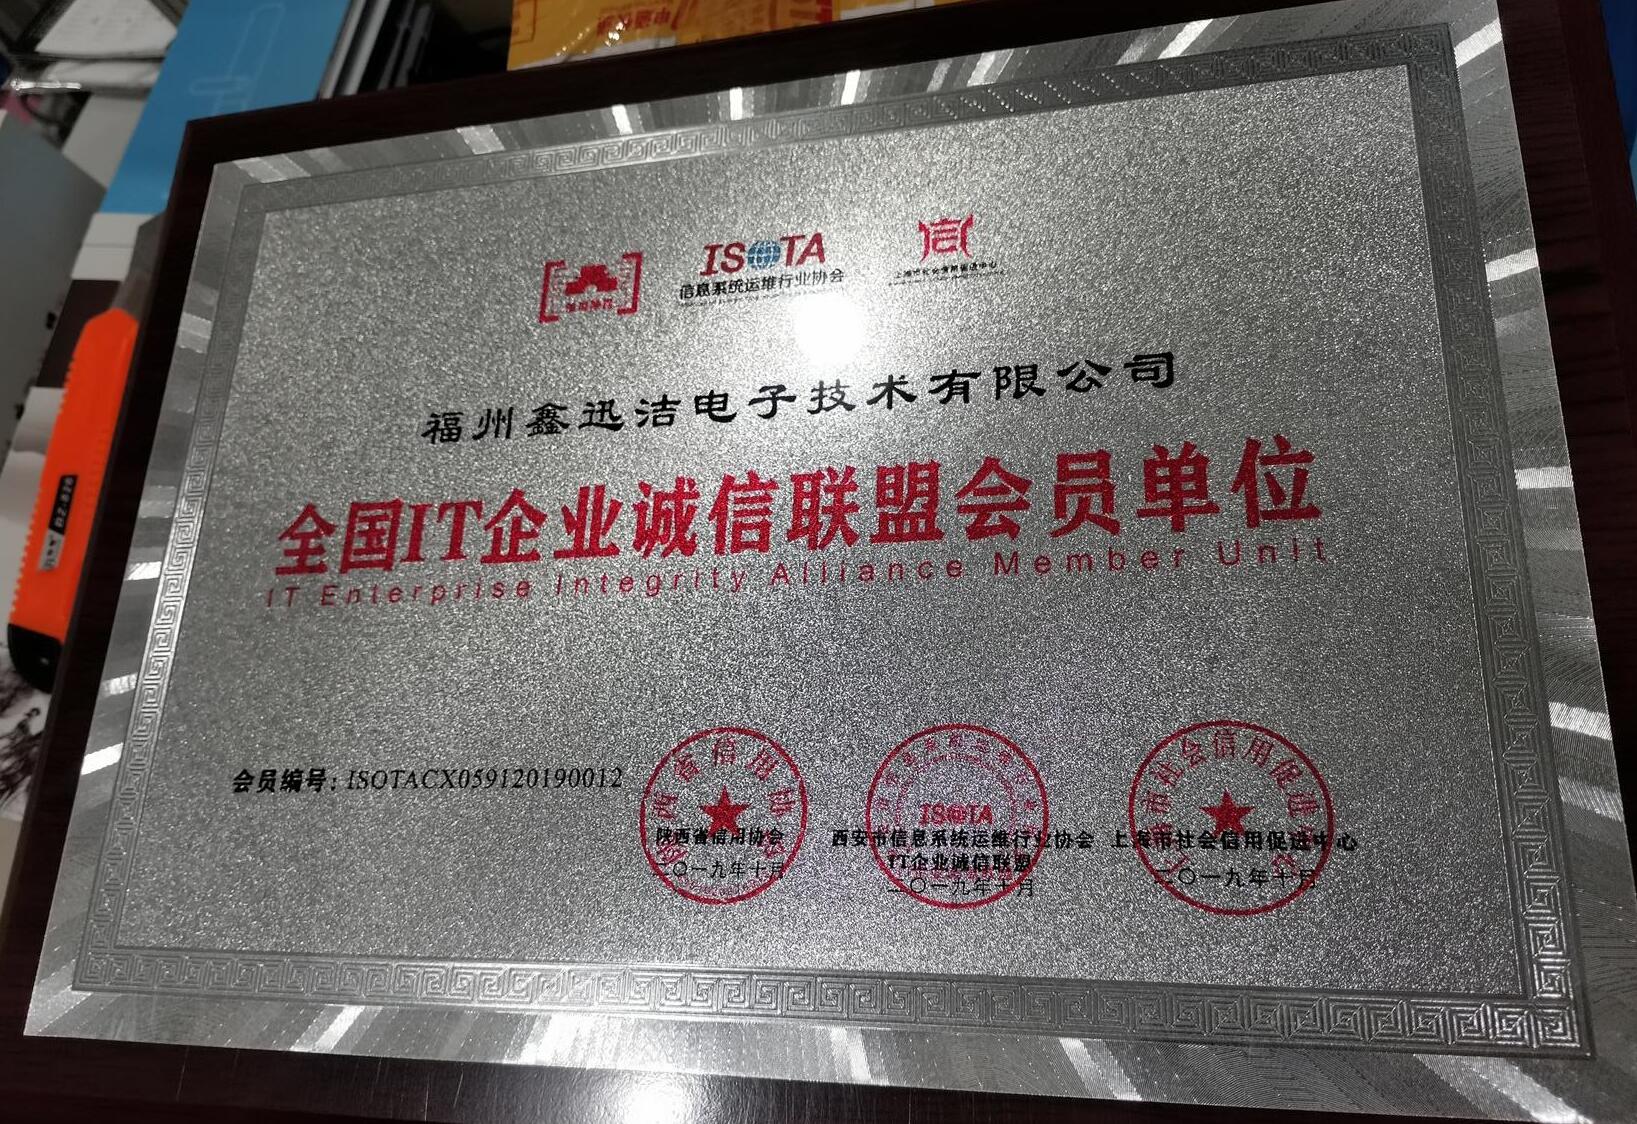 福州鑫迅洁电子技术有限公司成为信息系统运维行业协会全国IT企业诚信联盟会员单位